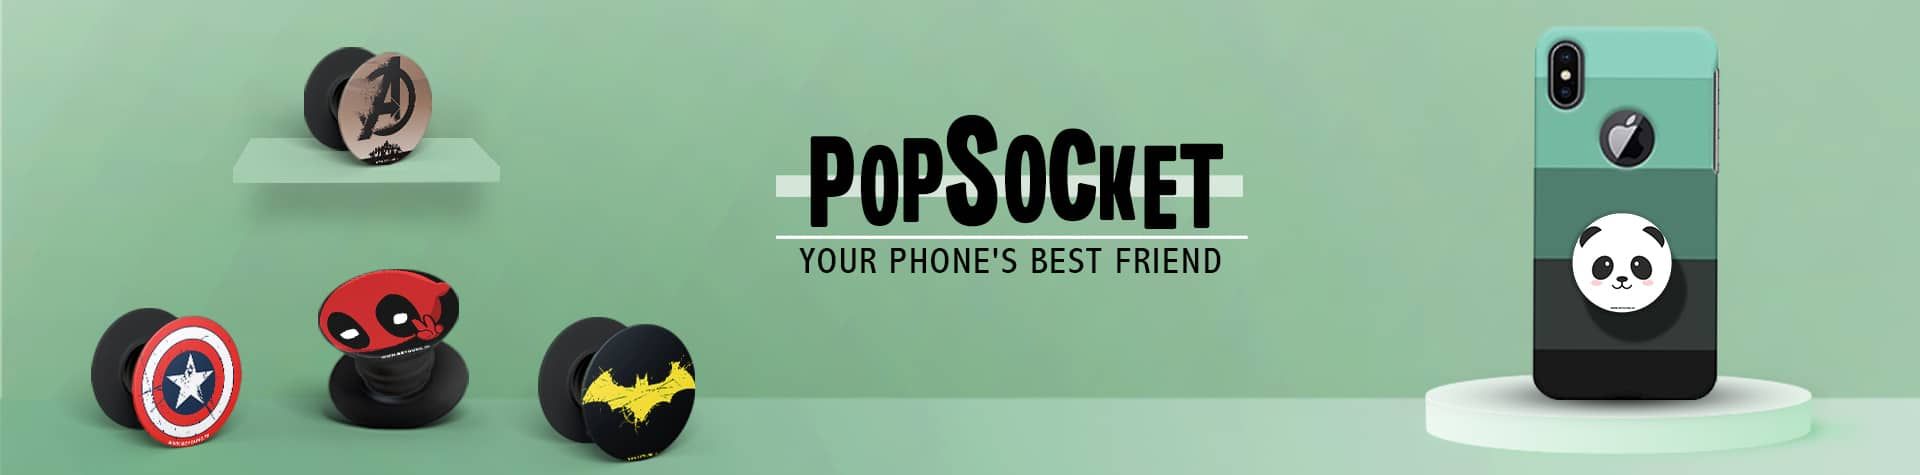 Pop Socket